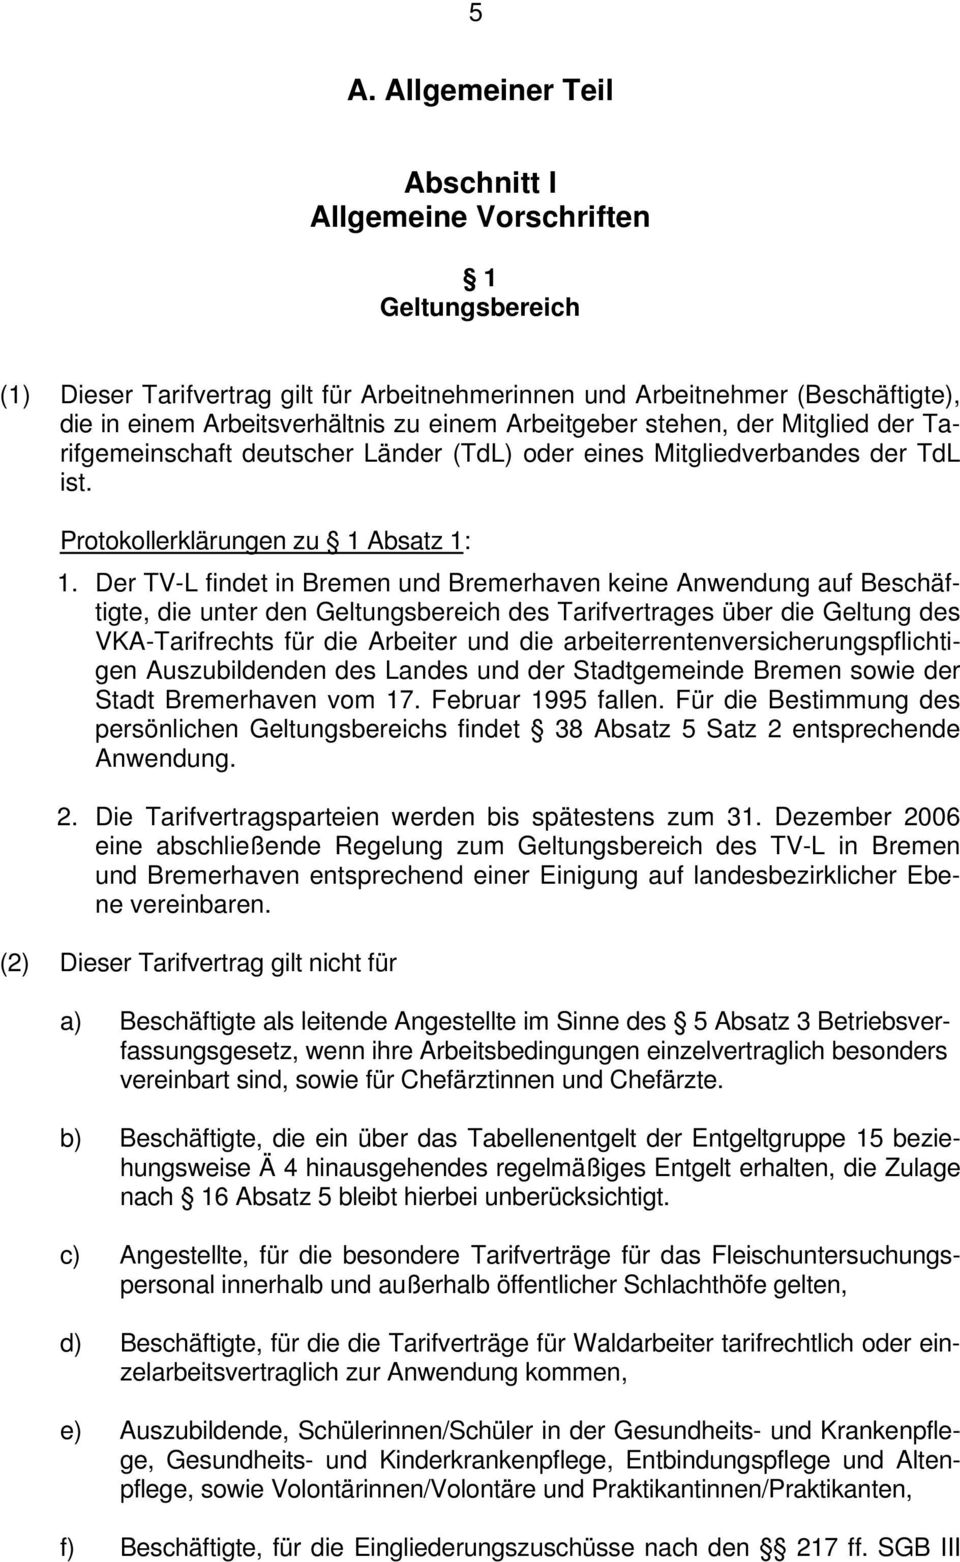 Der TV-L findet in Bremen und Bremerhaven keine Anwendung auf Beschäftigte, die unter den Geltungsbereich des Tarifvertrages über die Geltung des VKA-Tarifrechts für die Arbeiter und die